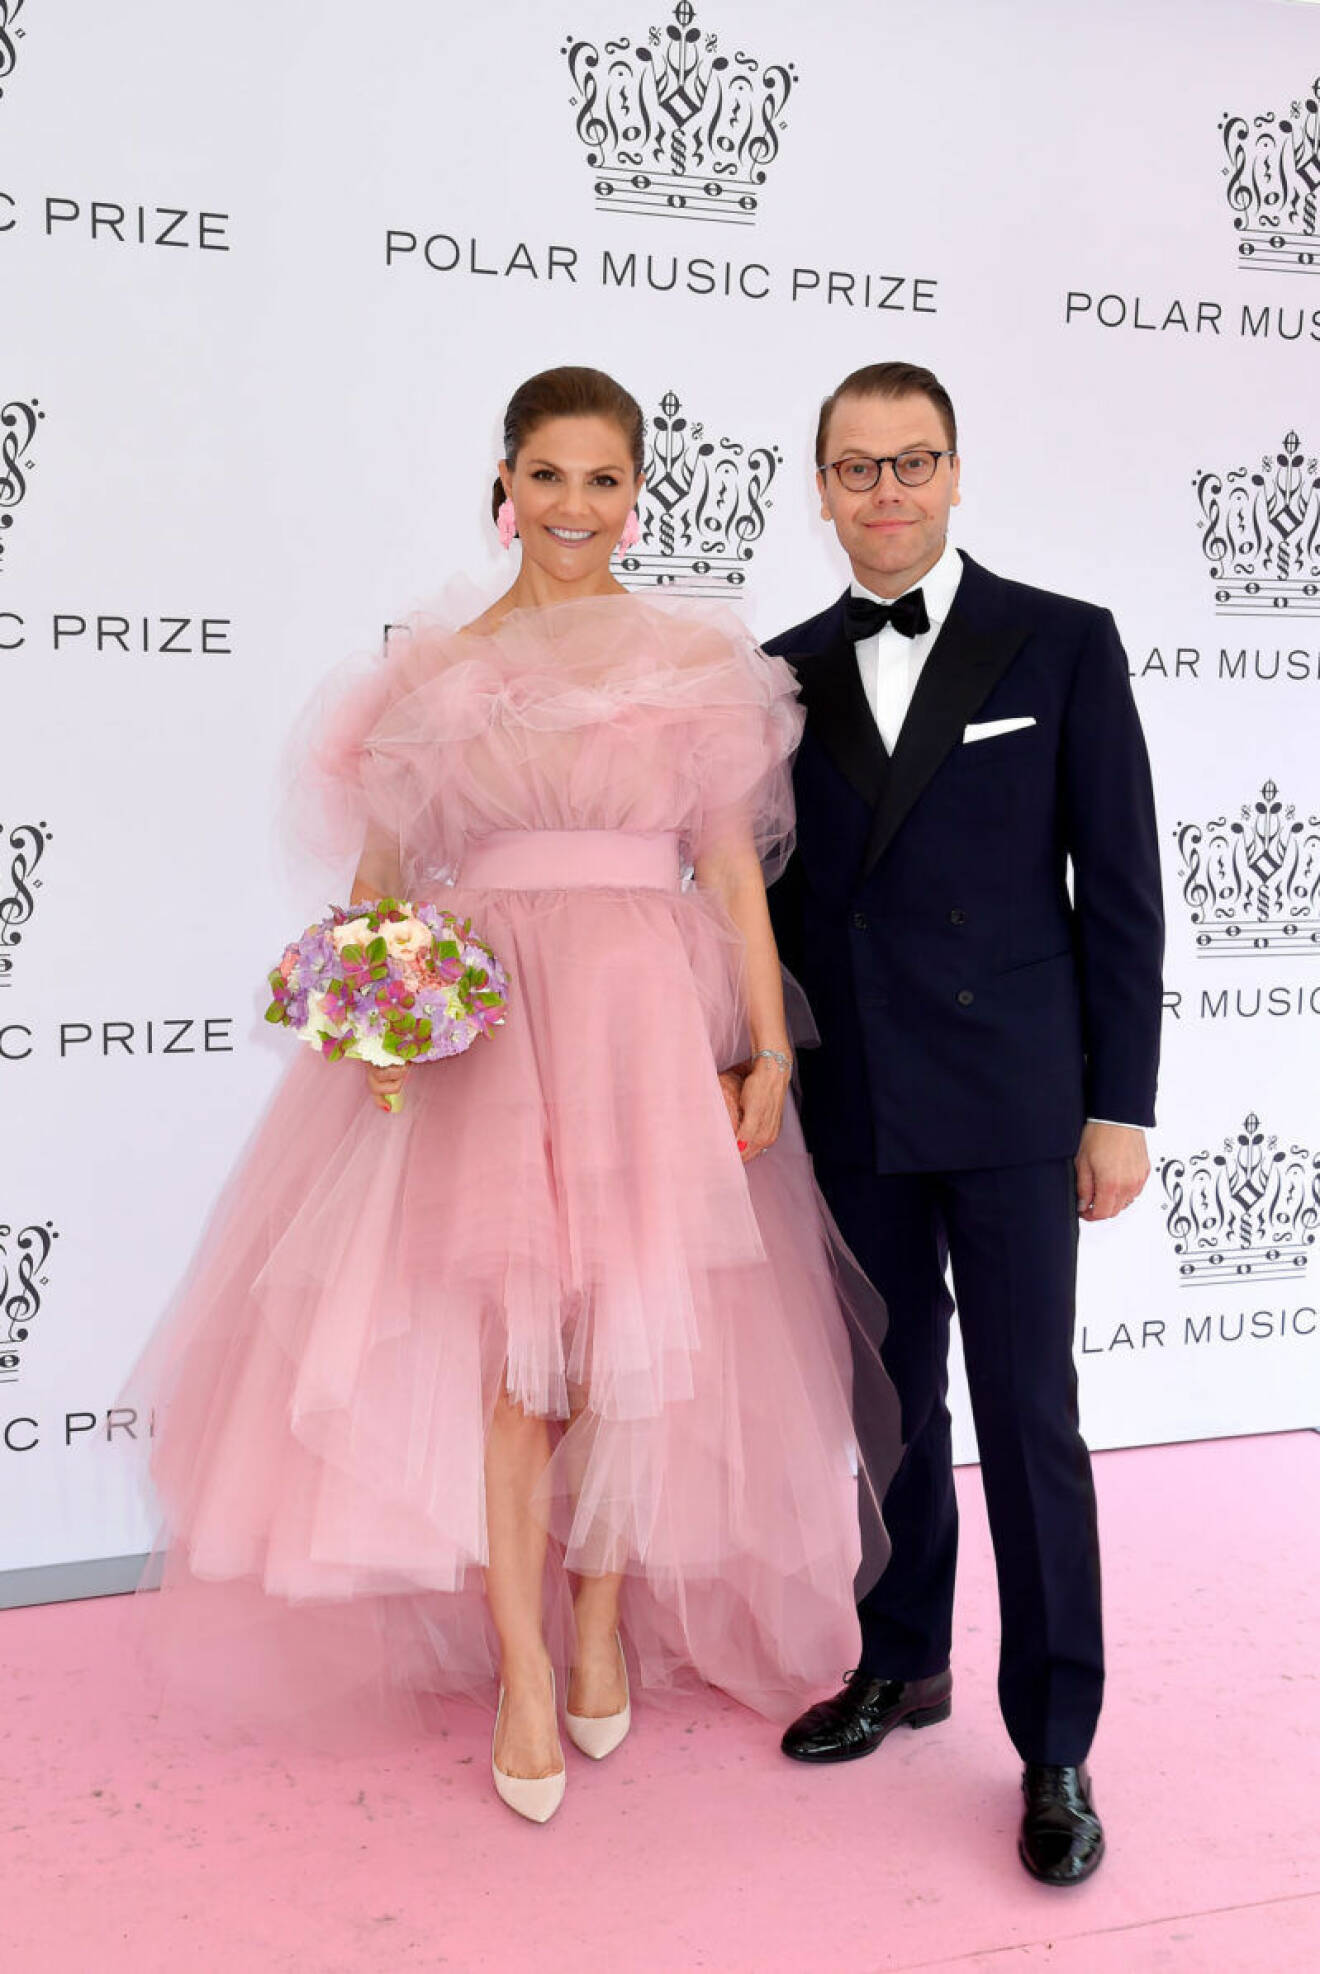 Kronprinsessan Victoria och prins Daniel anländer till Polar music prize 2019. 